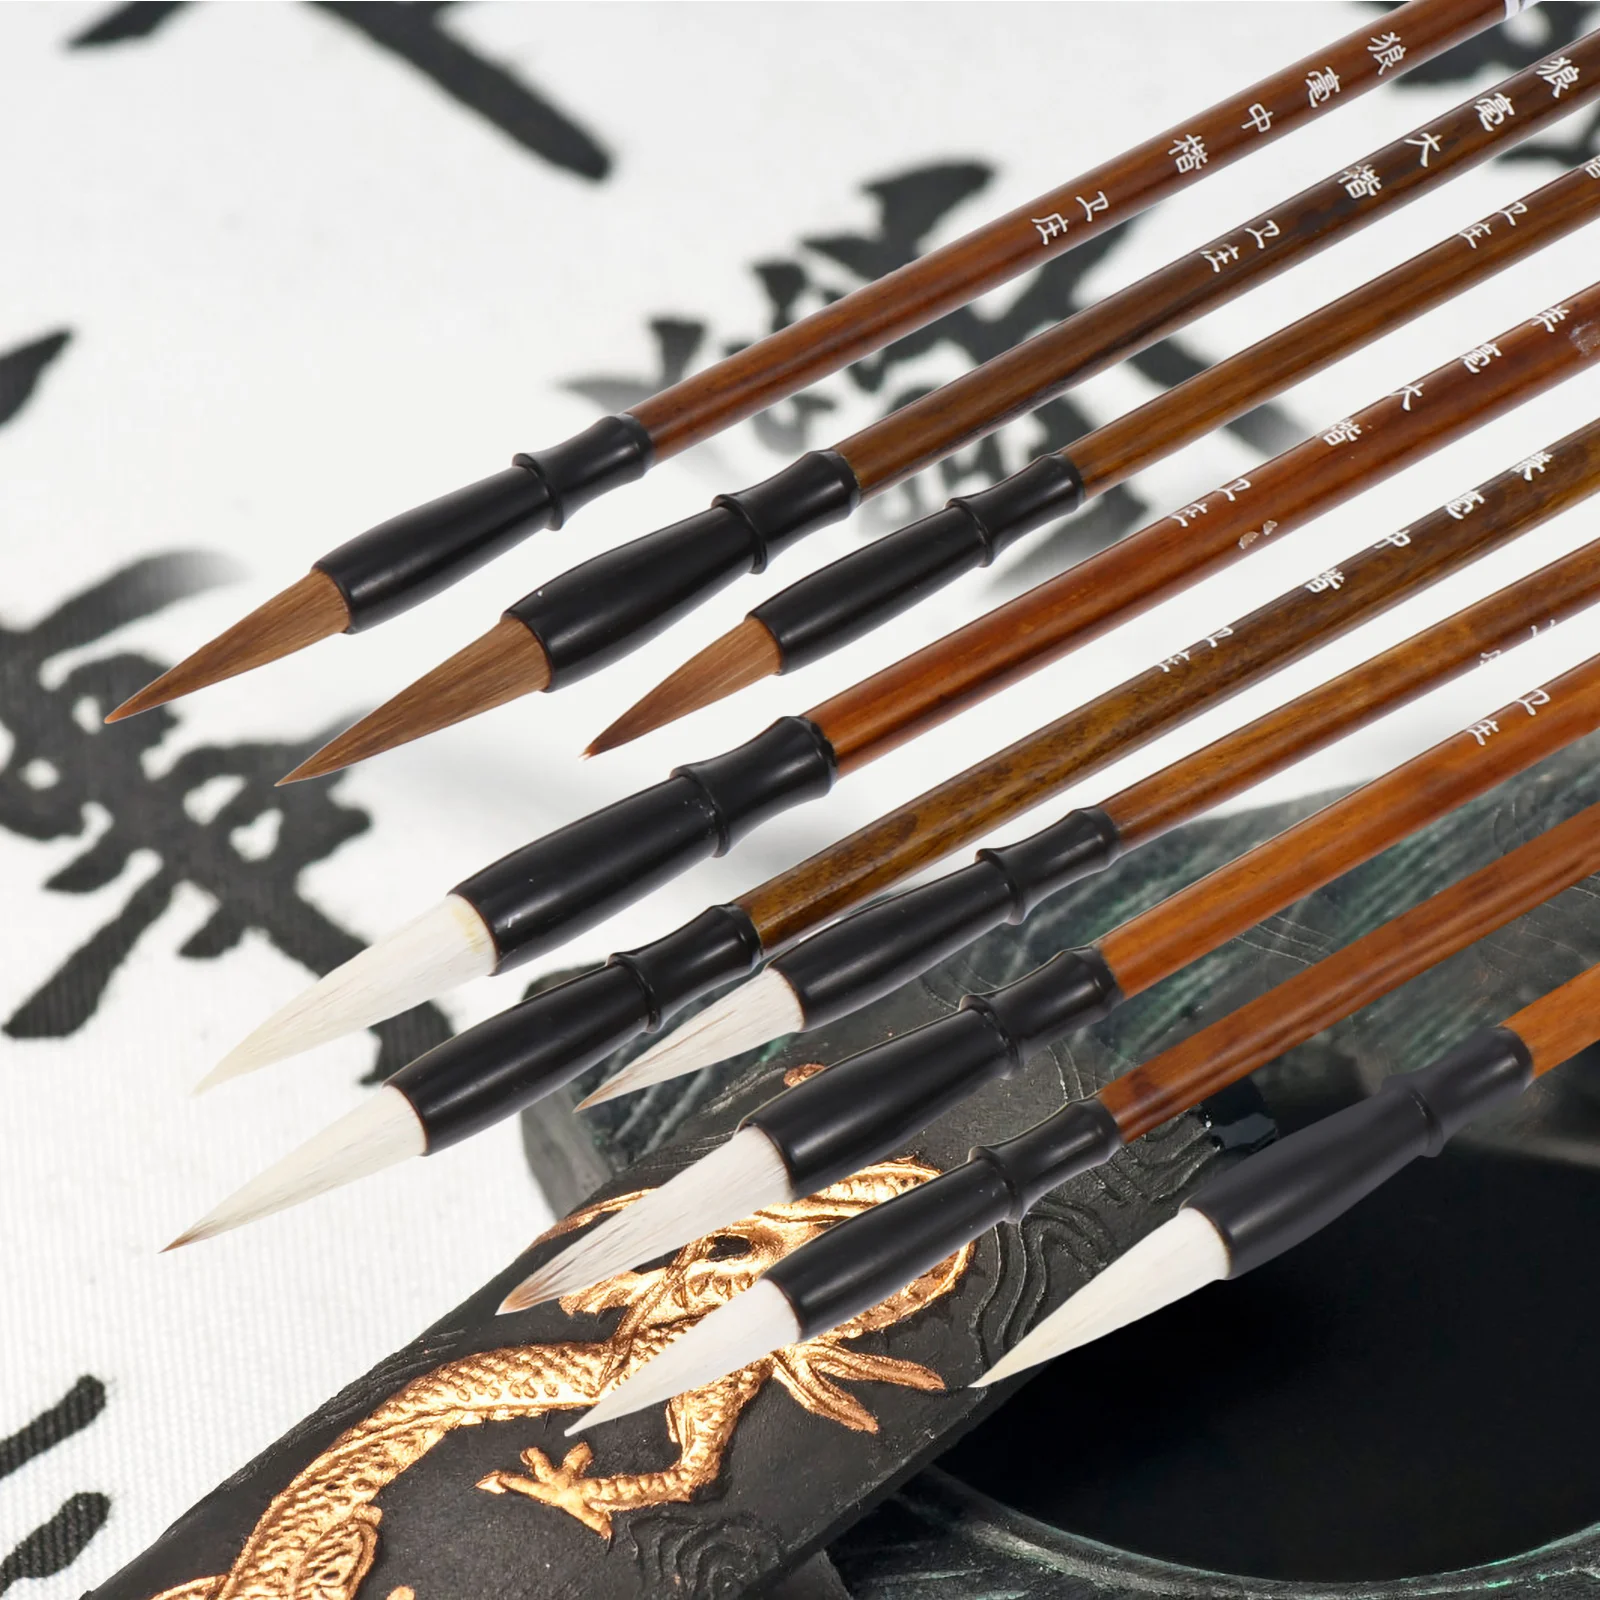 Çin Kaligrafi Fırçaları Taşınabilir Boyama Fırçaları (Açık Kahverengi)1 Torba Görüntü 4